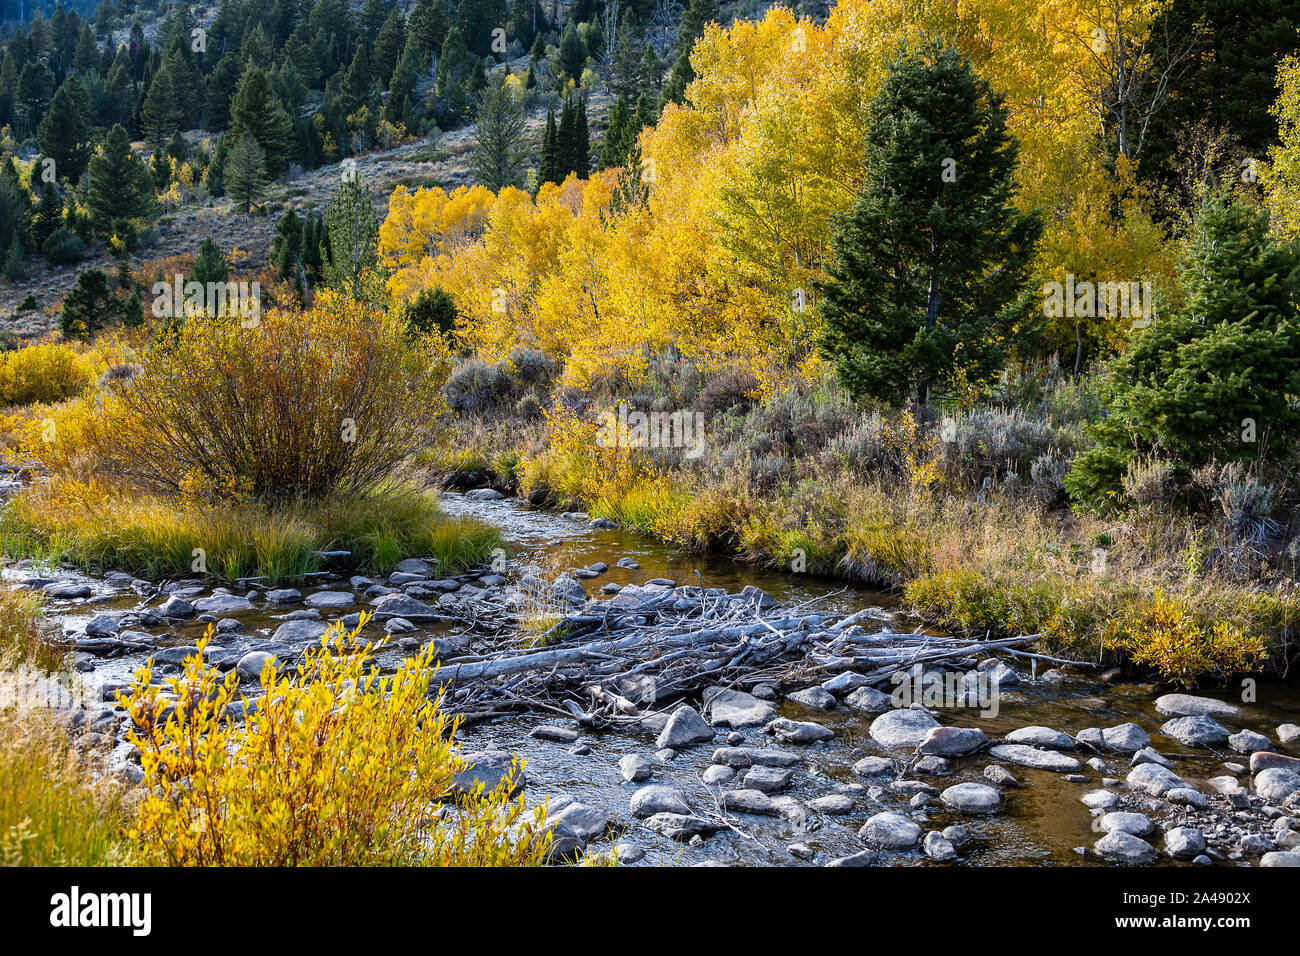 Die Farben des Herbstes auf den Bäumen entlang der Beaver Creek in der Nähe von US Highway 89, der Logan Canyon Scenic Byway in Logan Canyon, Uinta-Wasatch-Cache NF Utah, USA. Stockfoto